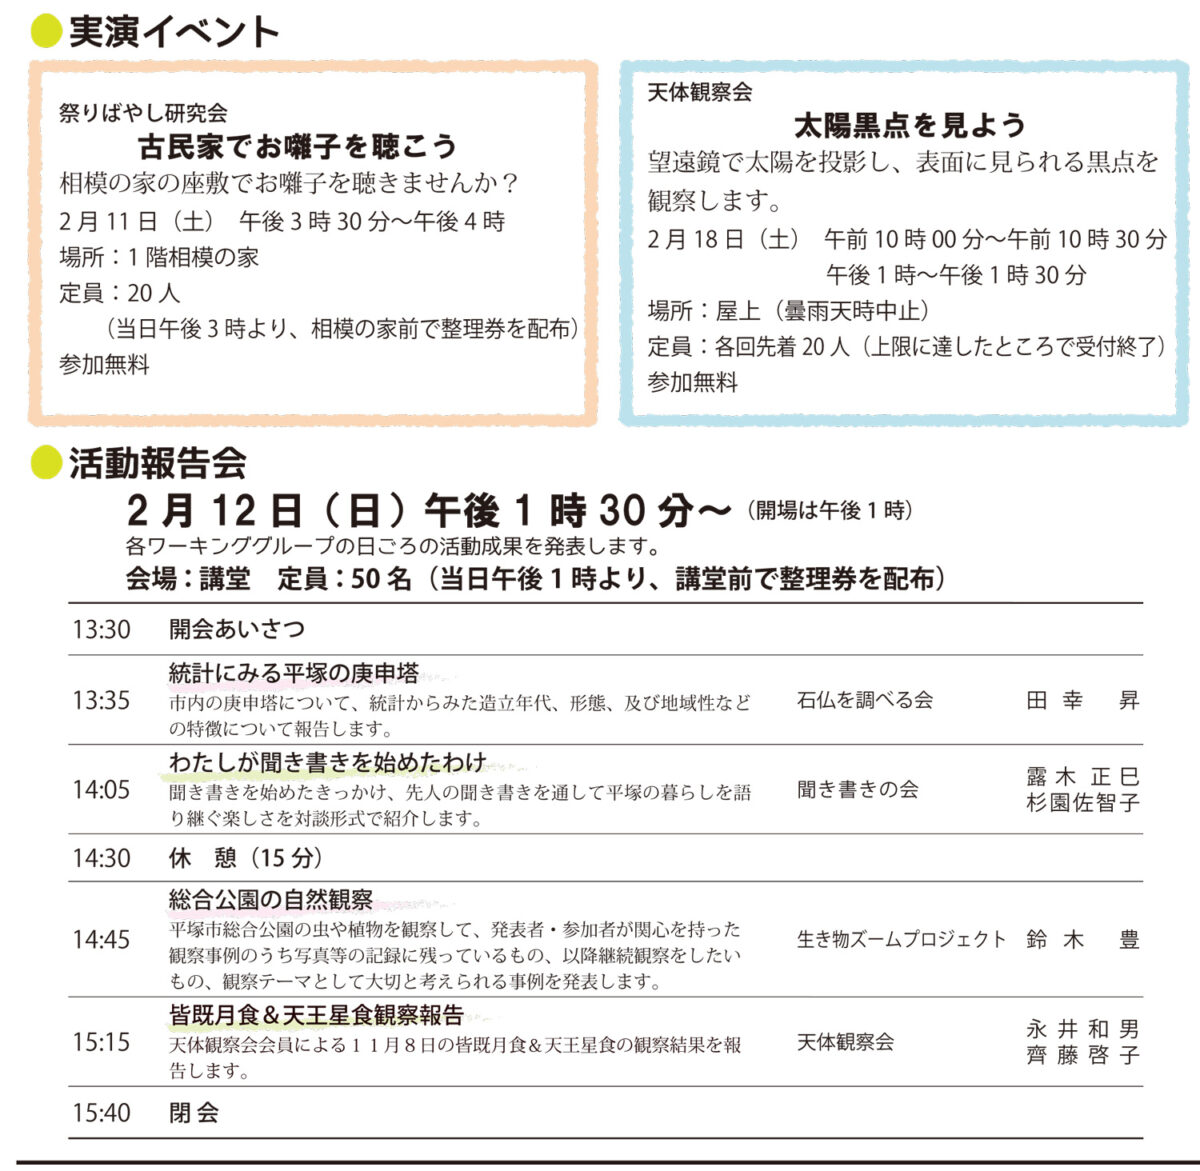 【平塚市博物館】第22回博物館文化祭